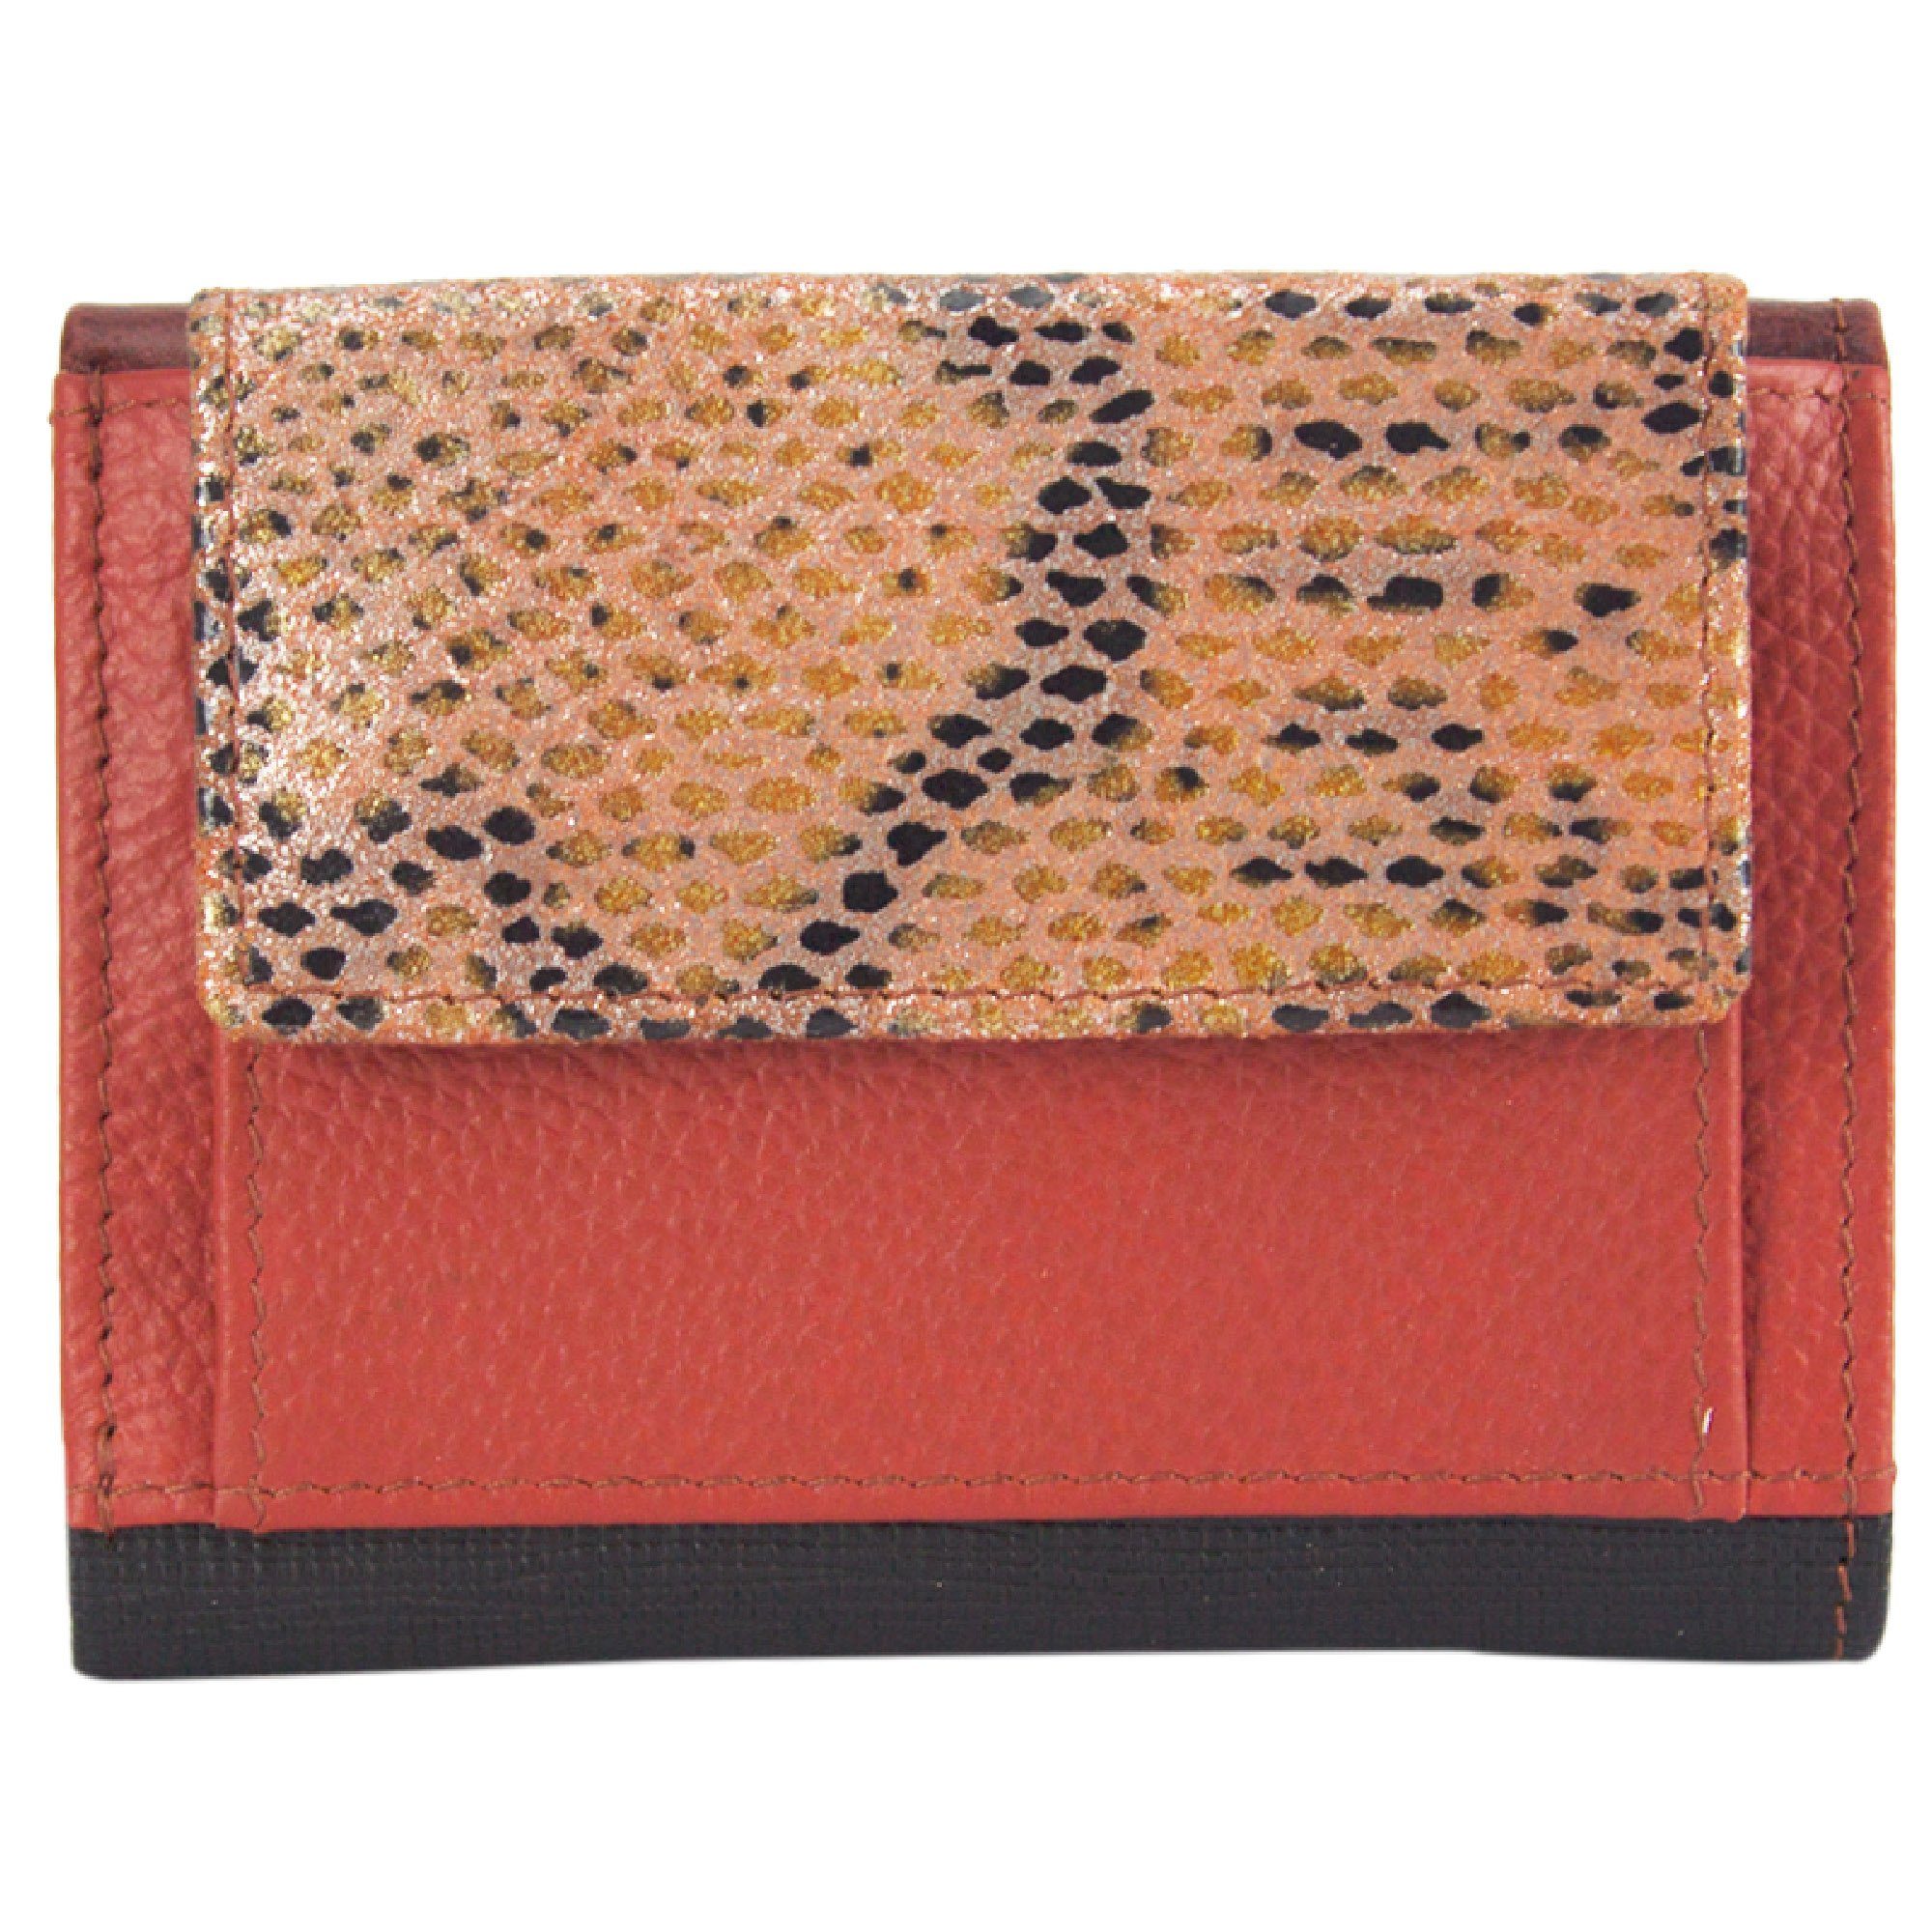 Sunsa Mini Geldbörse Mini klein Leder Geldbörse Geldbeutel Portemonnaie Brieftasche, echt Leder, aus recycelten Lederresten, mit RFID-Schutz, Unisex